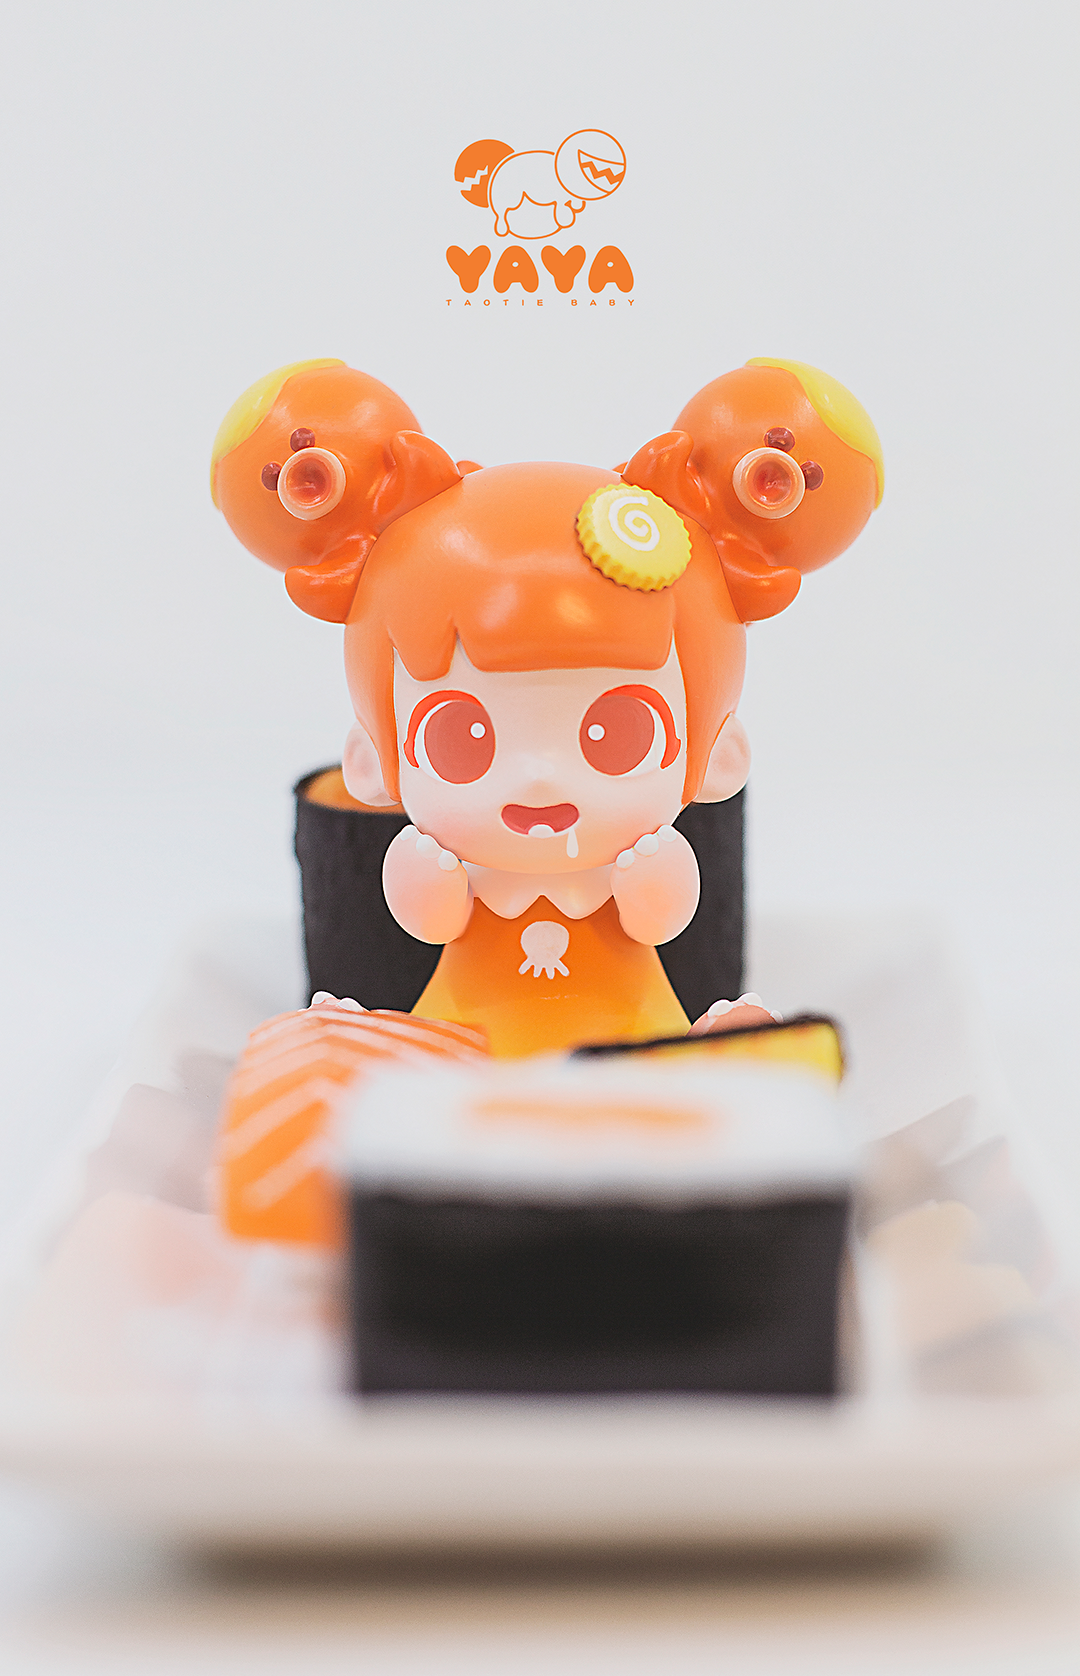 Yaya - Octopus-Orange by MoeDouble2020 x WeArtDoing